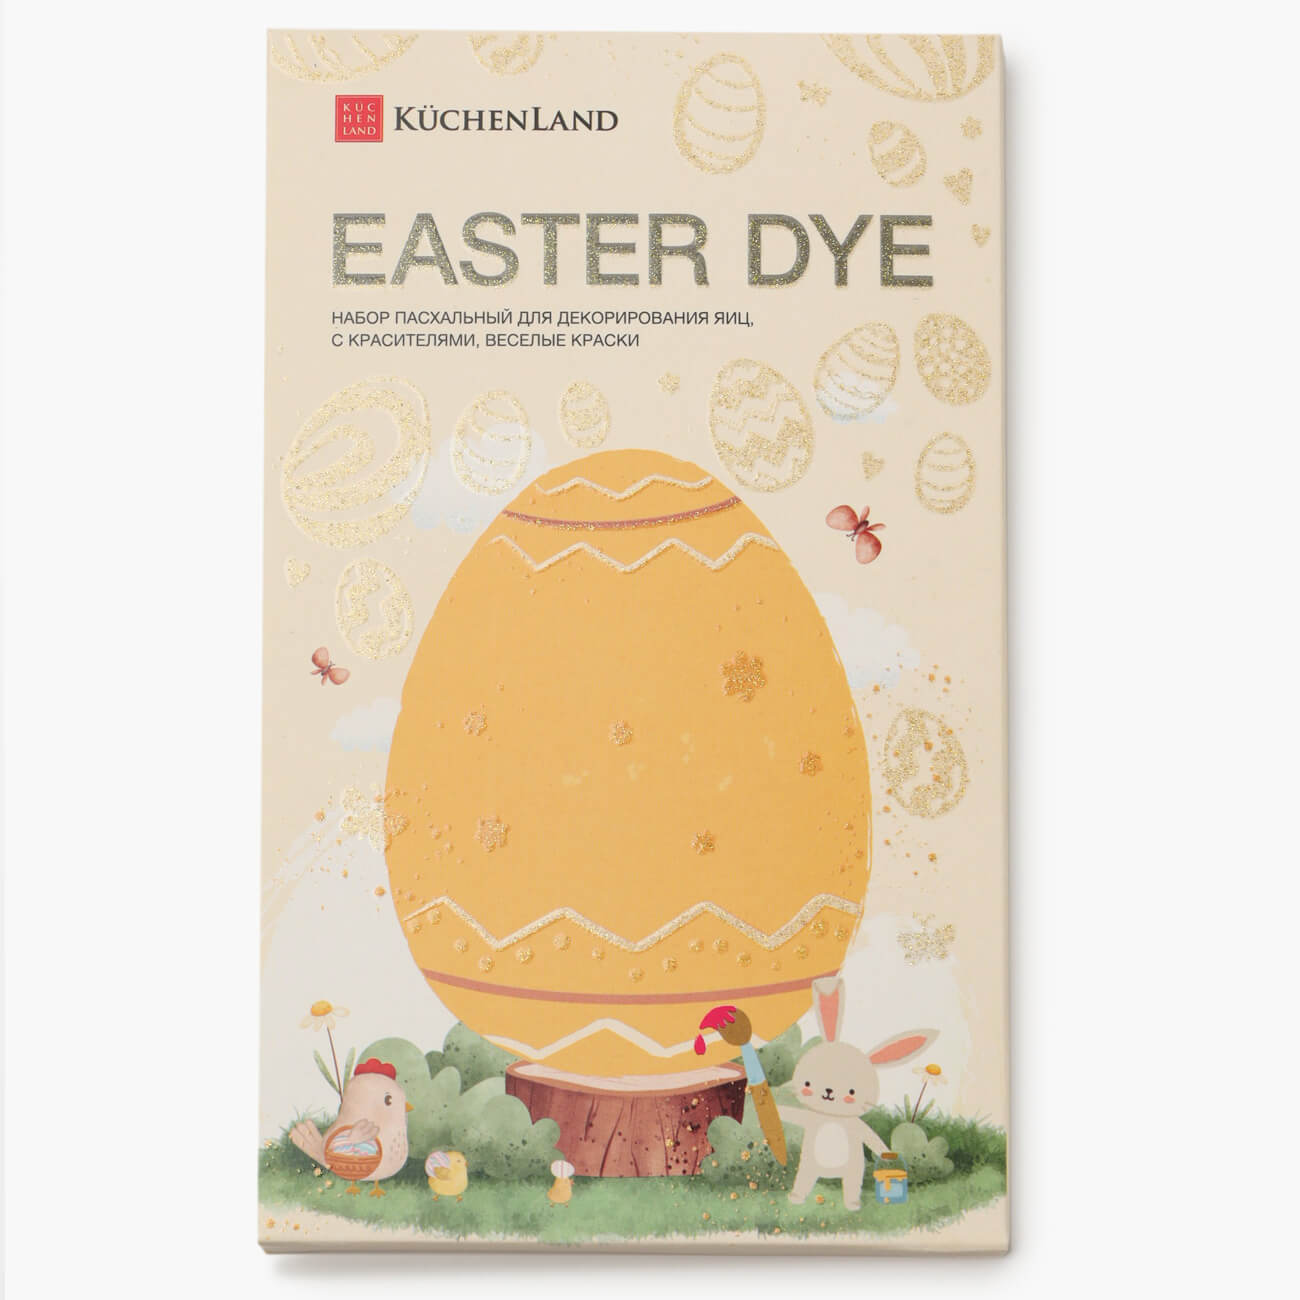 Набор пасхальный для декорирования яиц, 7 цветов/13 пр, Веселые краски, Easter dye